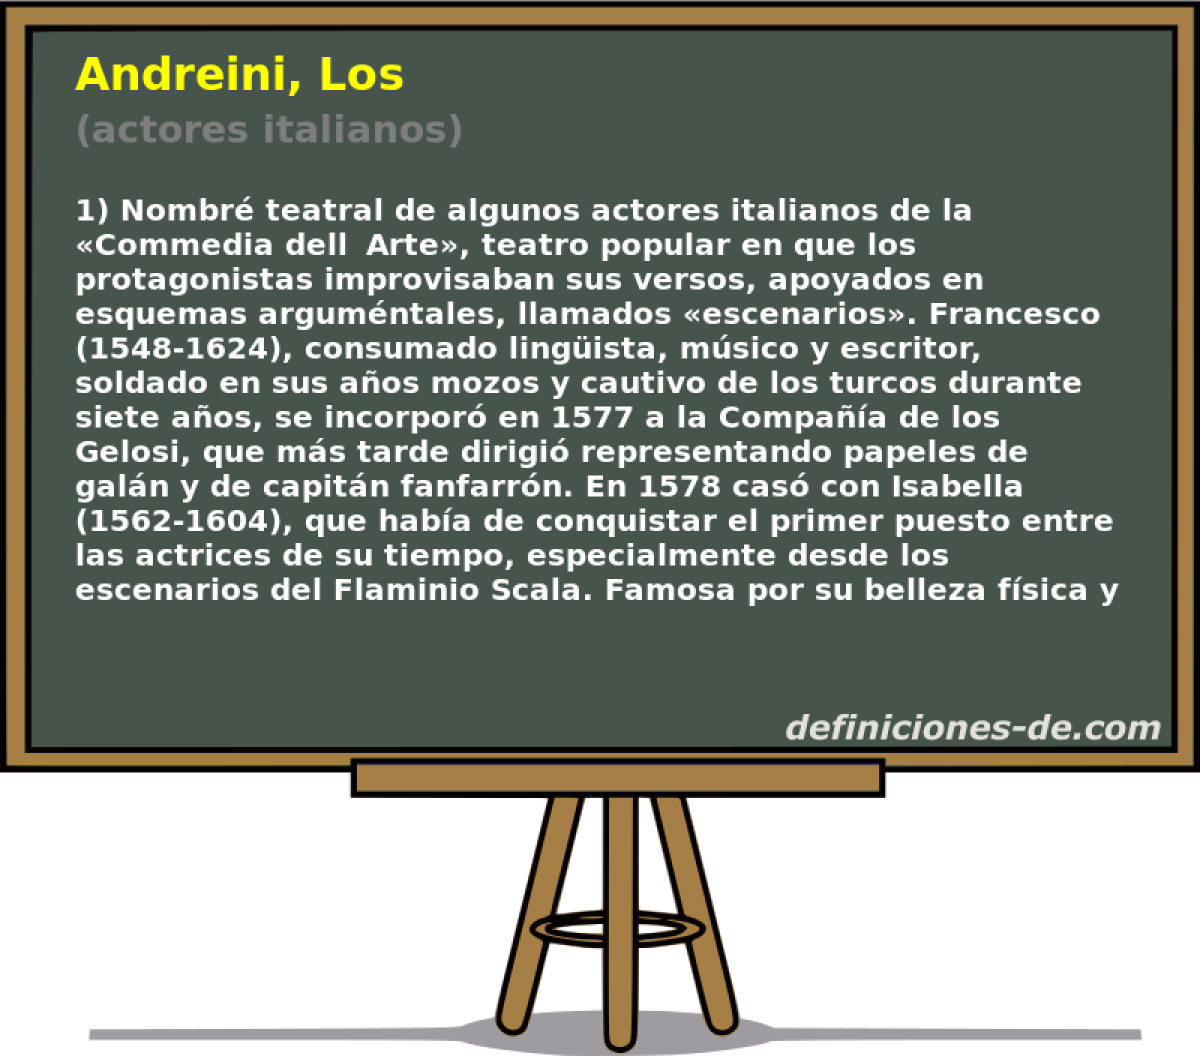 Andreini, Los (actores italianos)